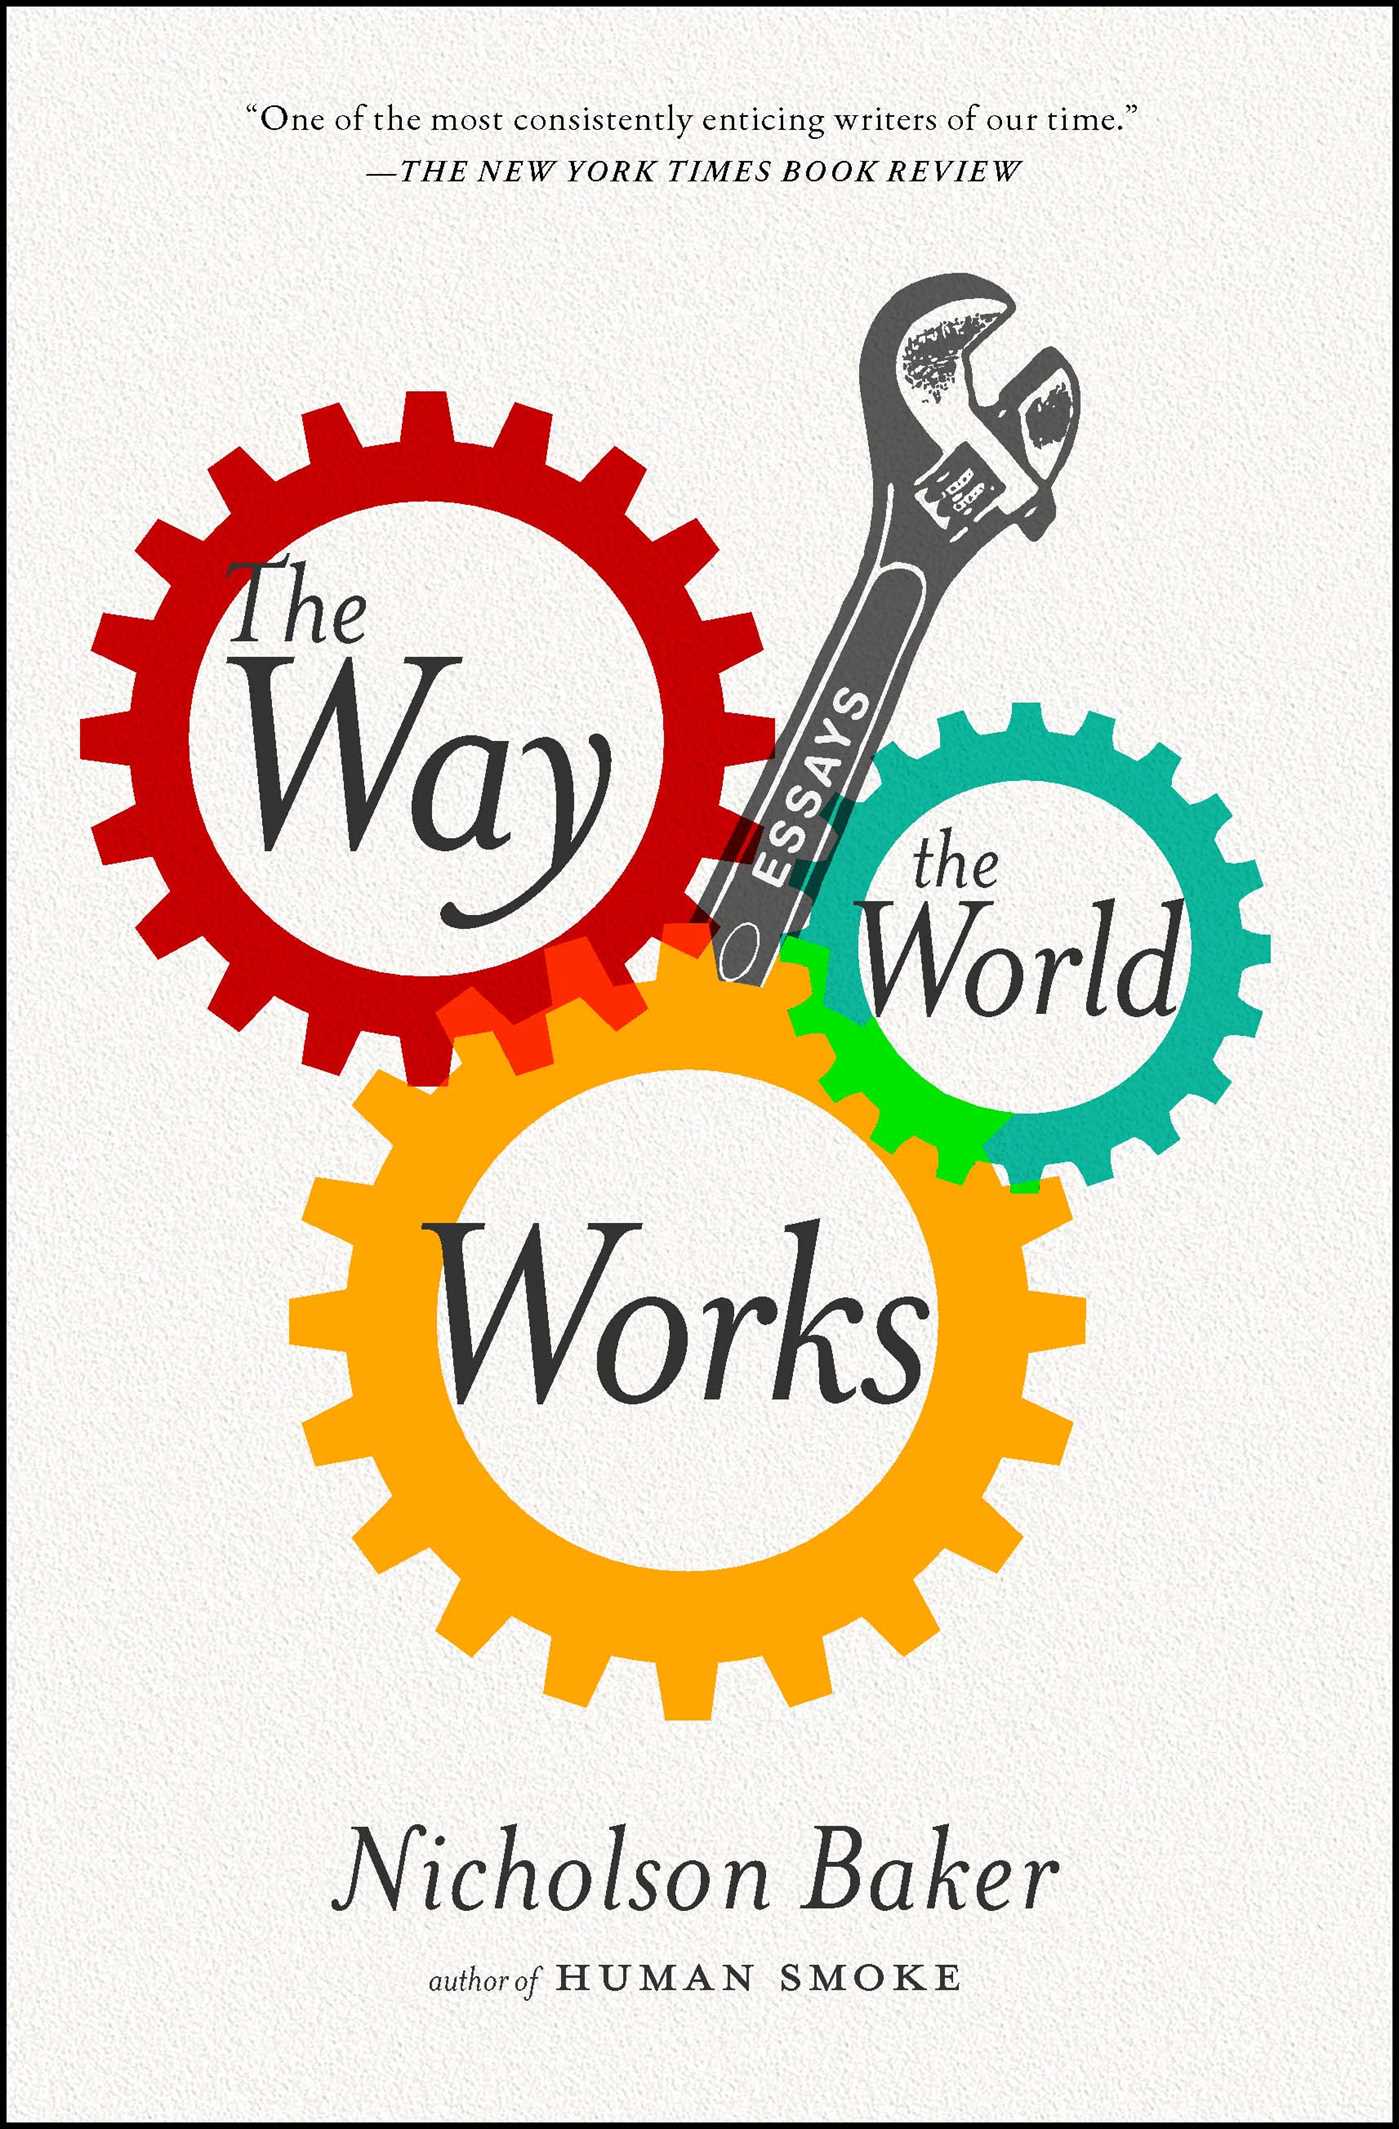 Work world life. The World of work книга. Work книга. World works. How the World works.